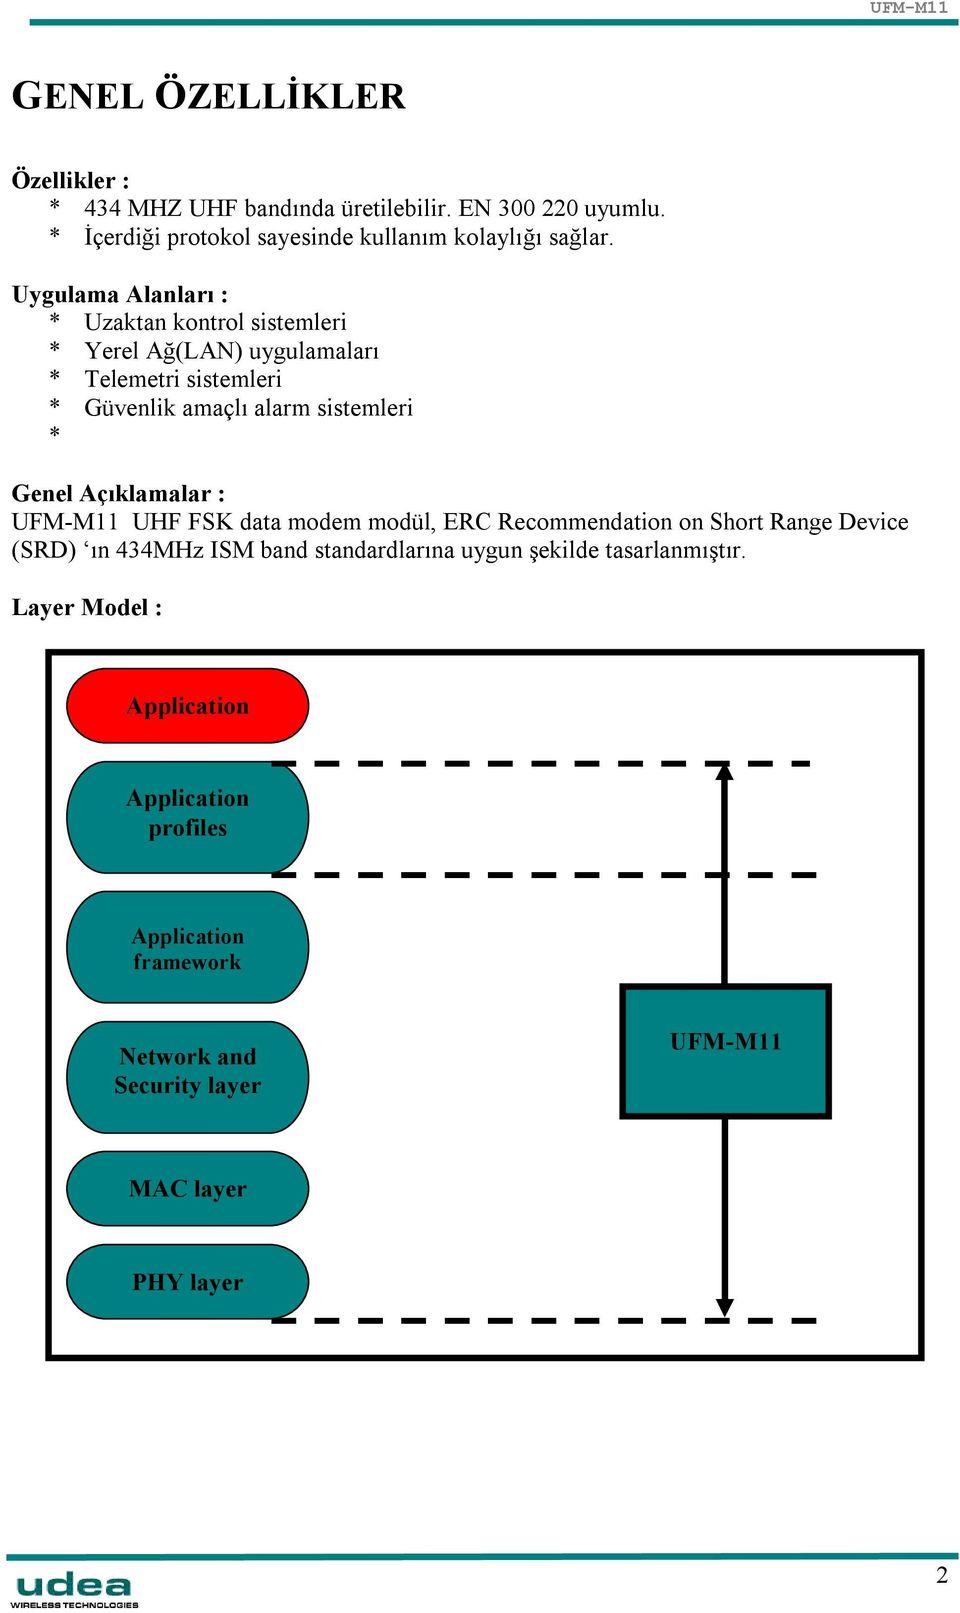 Genel Açıklamalar : UFM-M11 UHF FSK data modem modül, ERC Recommendation on Short Range Device (SRD) ın 434MHz ISM band standardlarına uygun